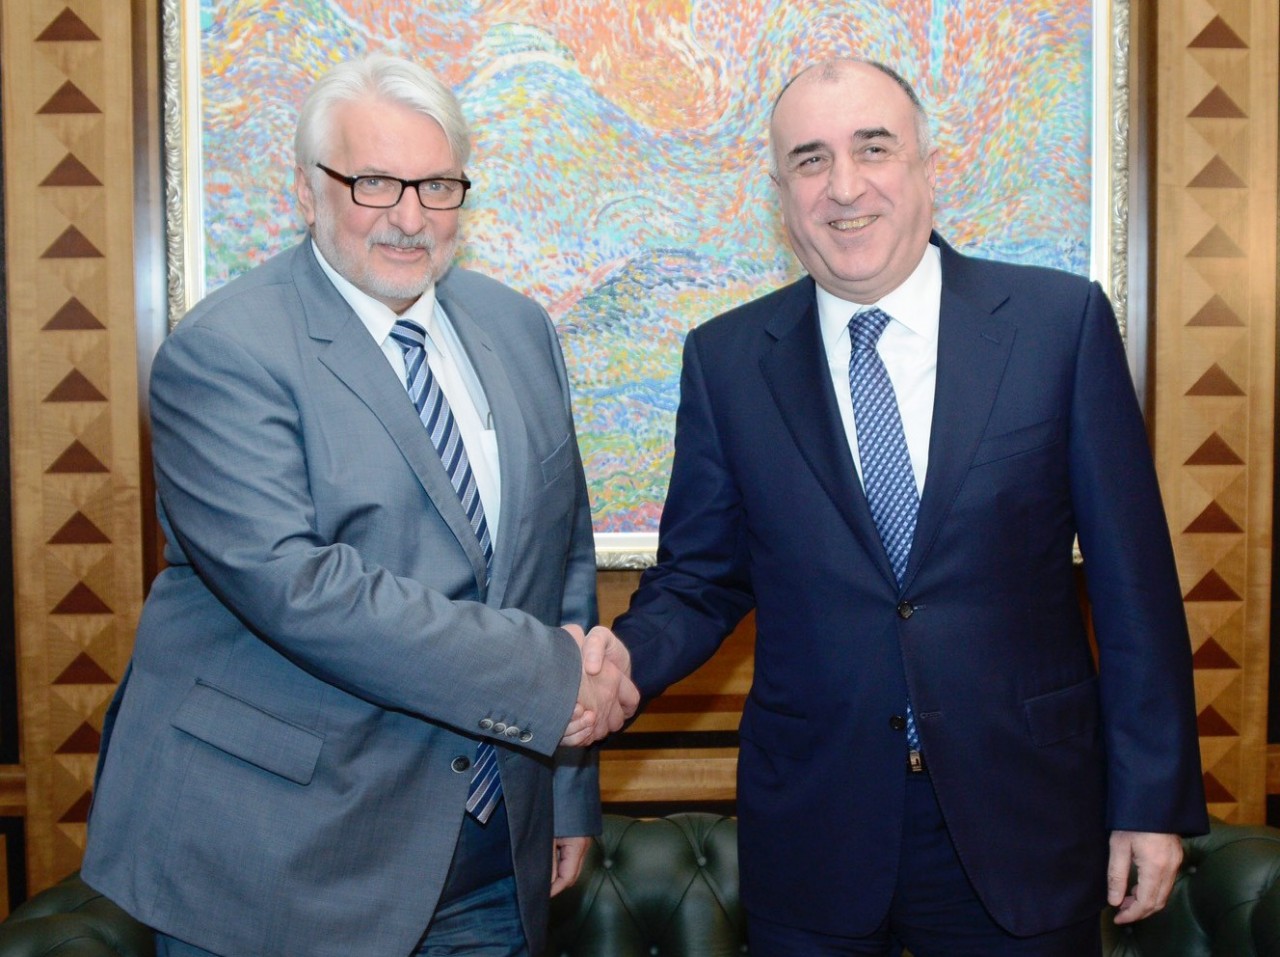 Мамедьяров анонсировал очередной раунд переговоров между Азербайджаном и ЕС